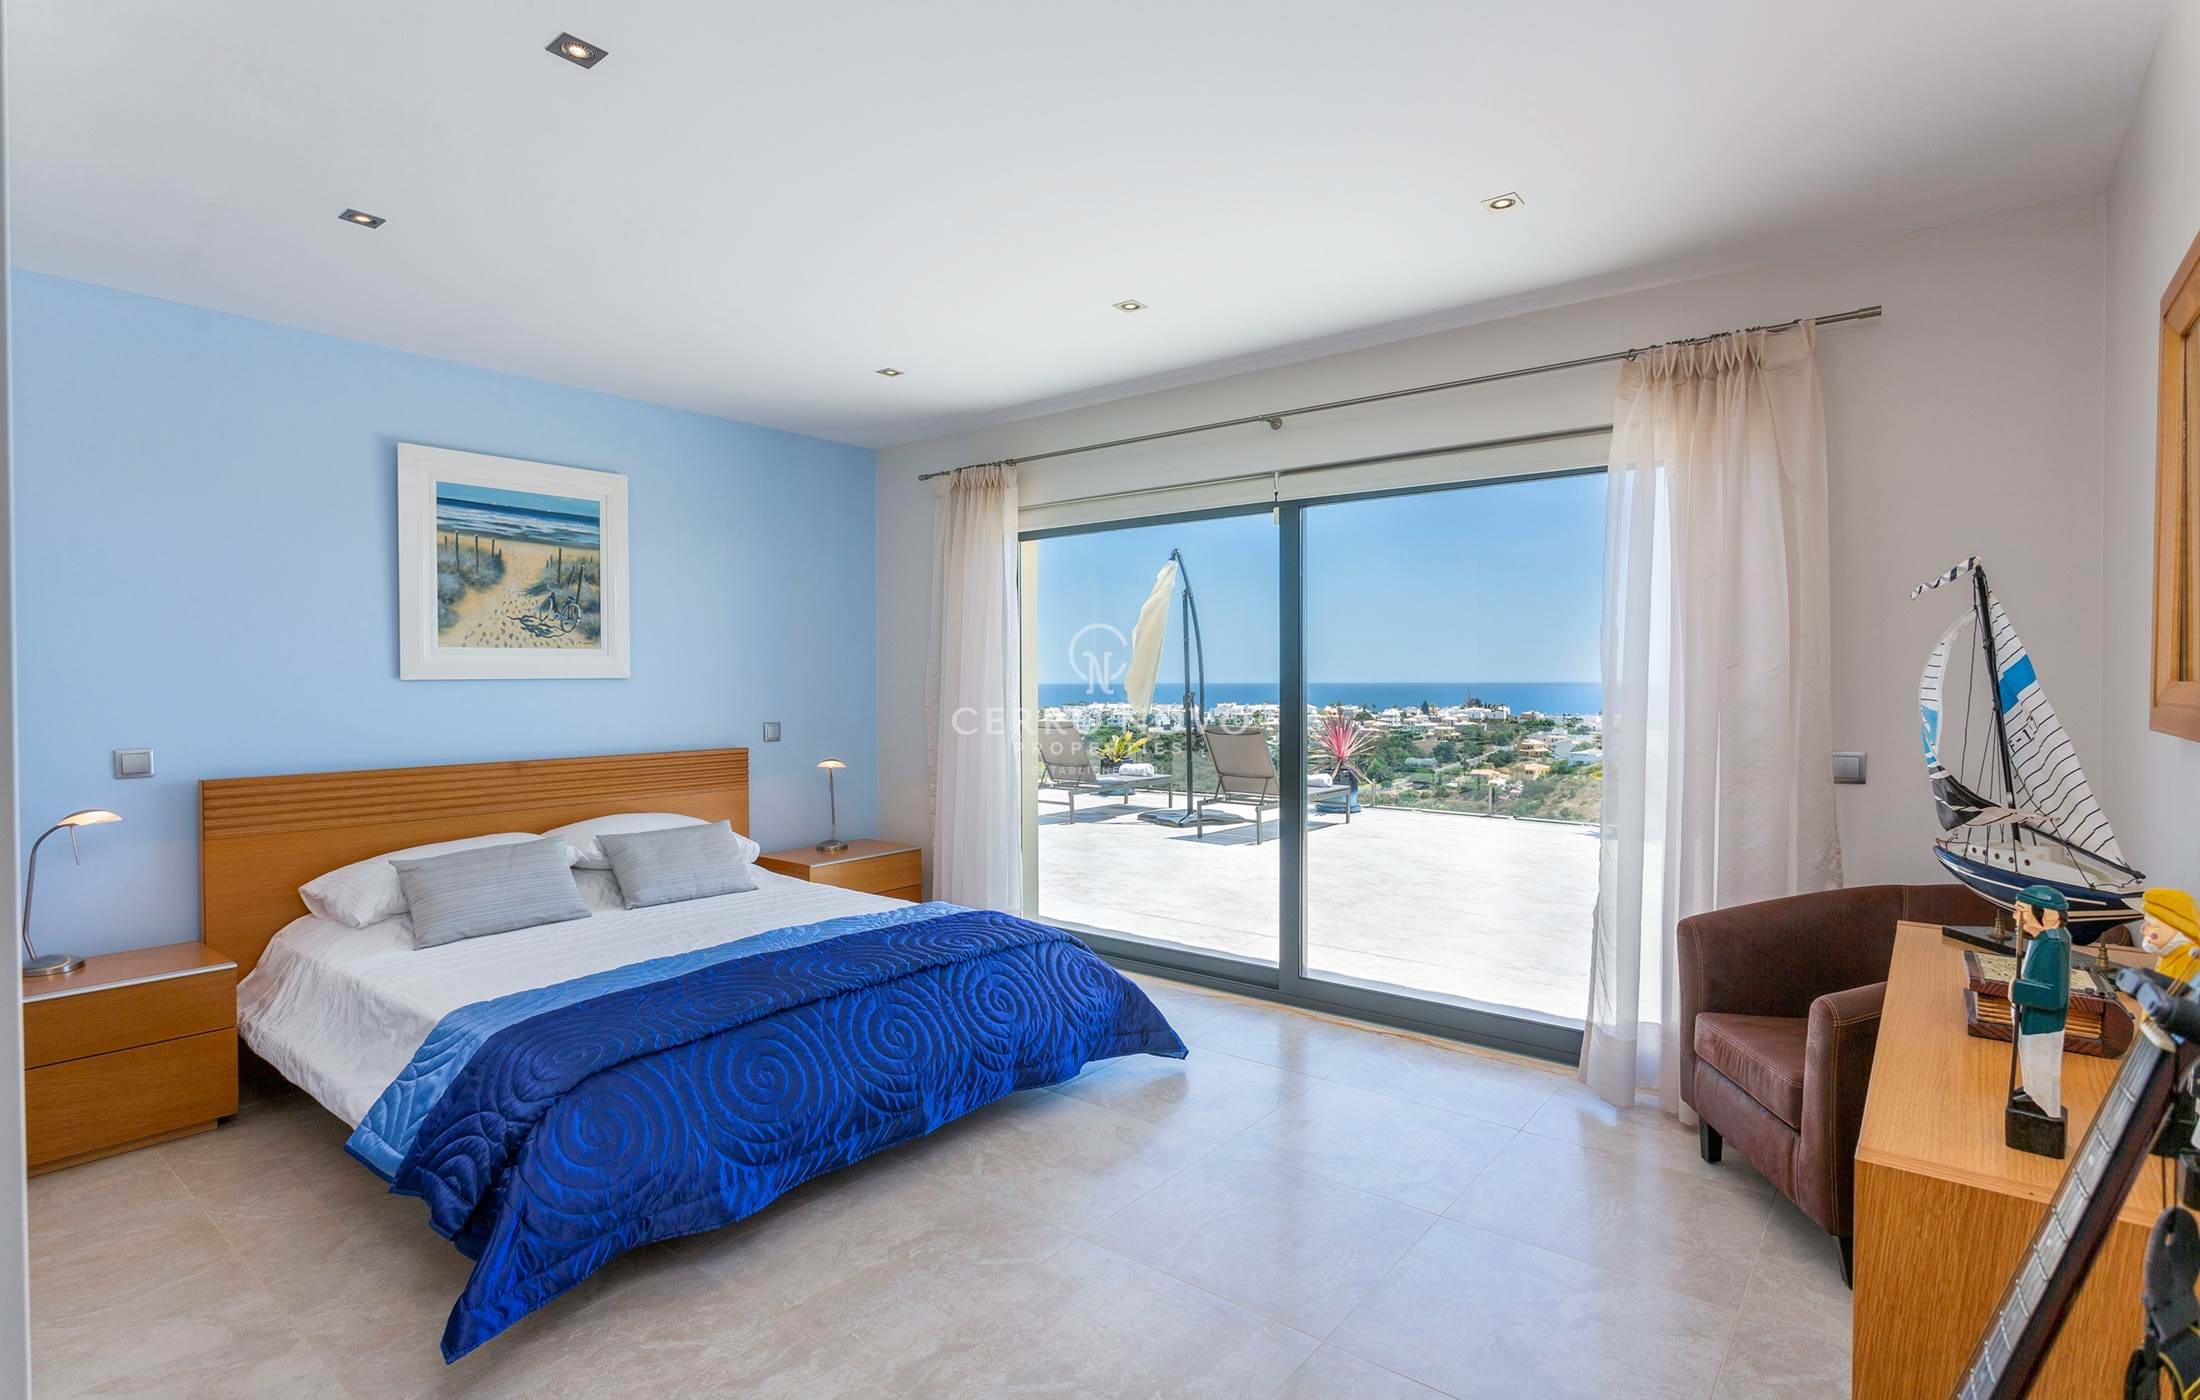 Moradia moderna de 4 quartos com vistas espectaculares de mar